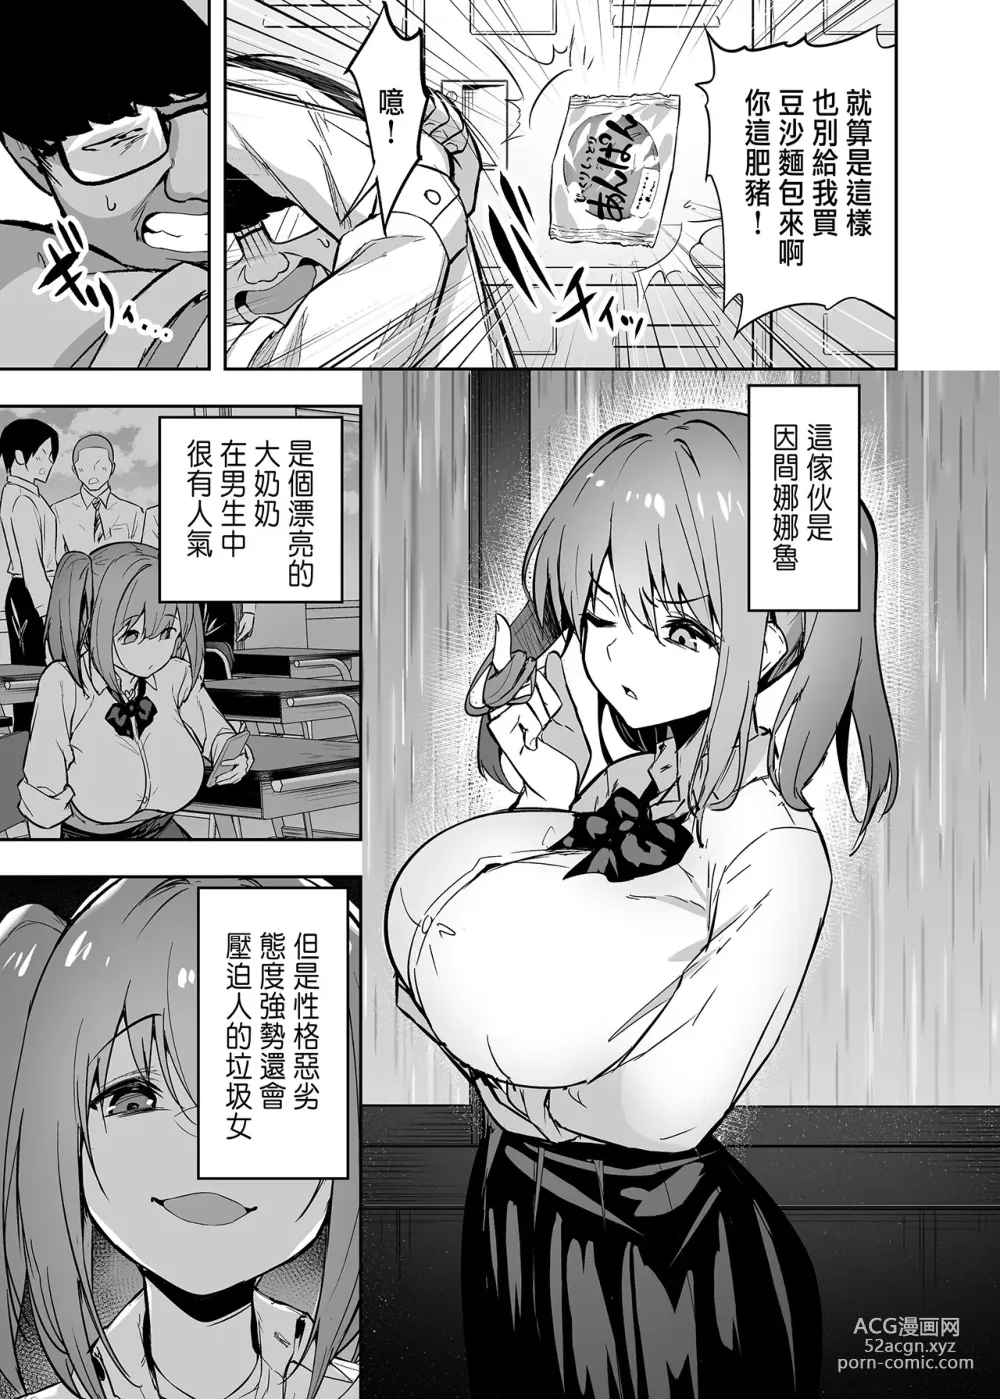 Page 7 of doujinshi 把囂張狂妄的辣妹變成魅魔來懲罰1-2